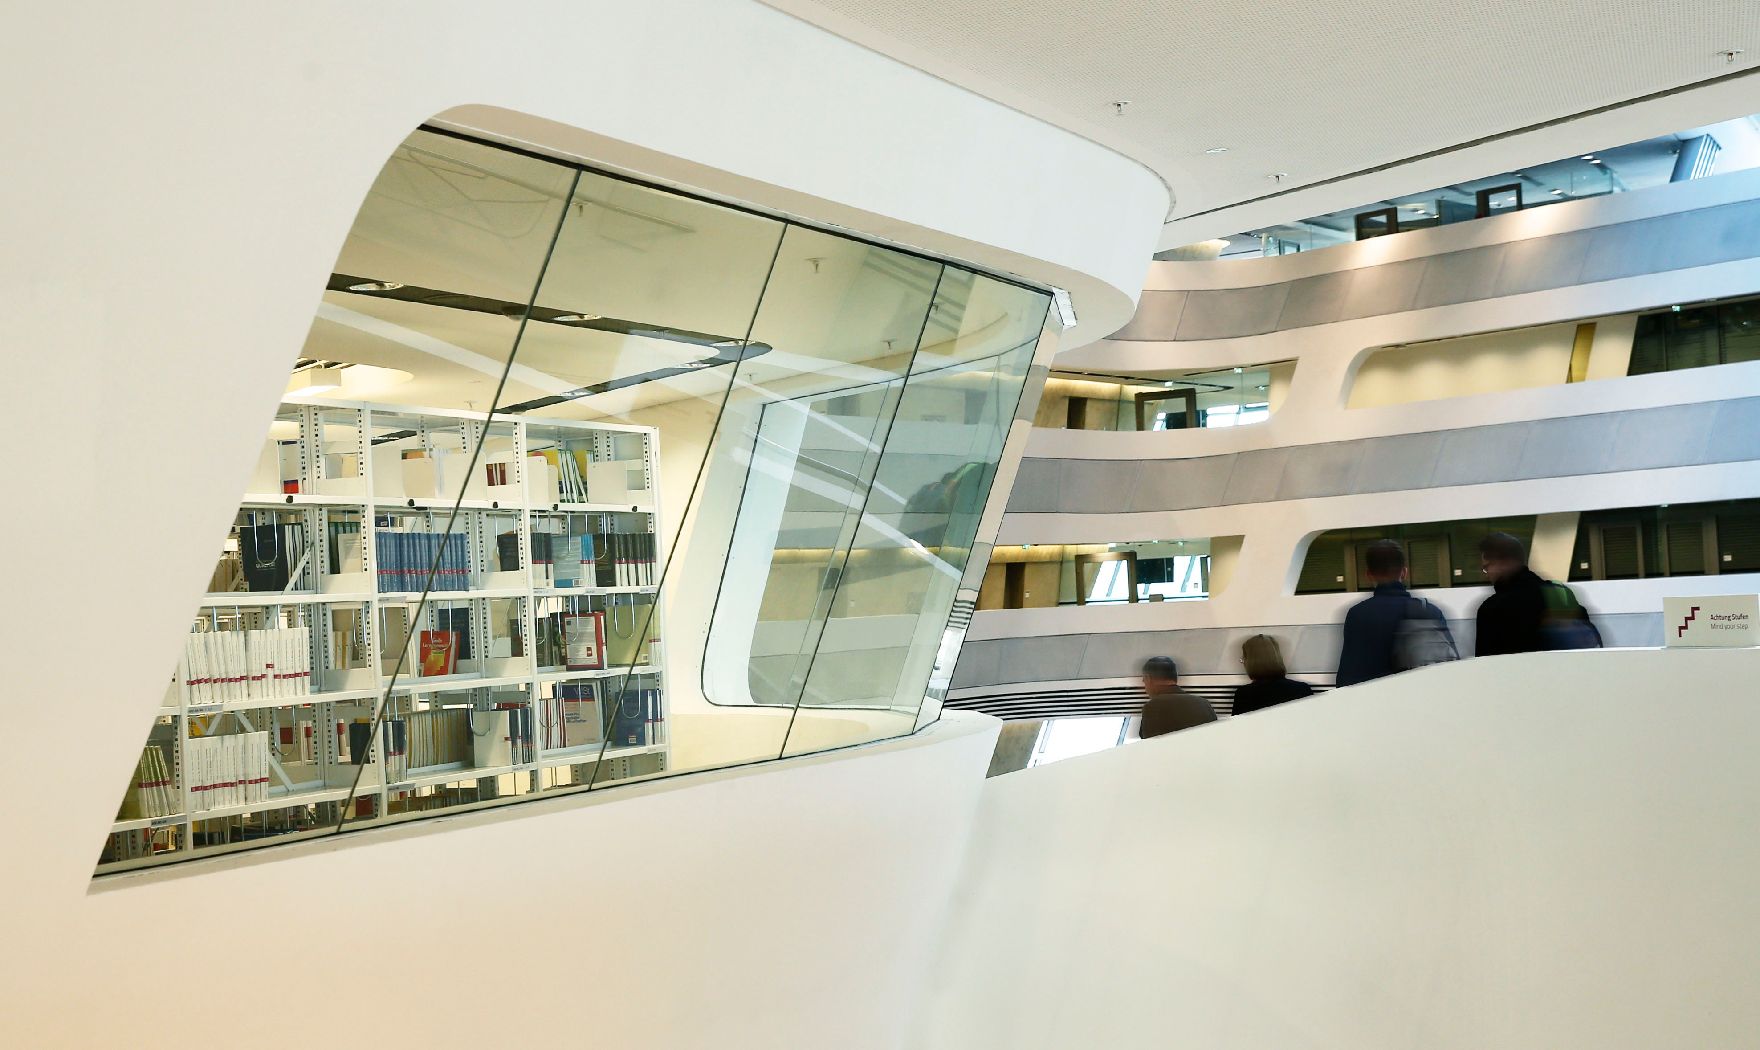 Wirtschaftsuniversität Wien Schlagworte: Architektur, Bibliothek, Fenster, Menschen, Universität